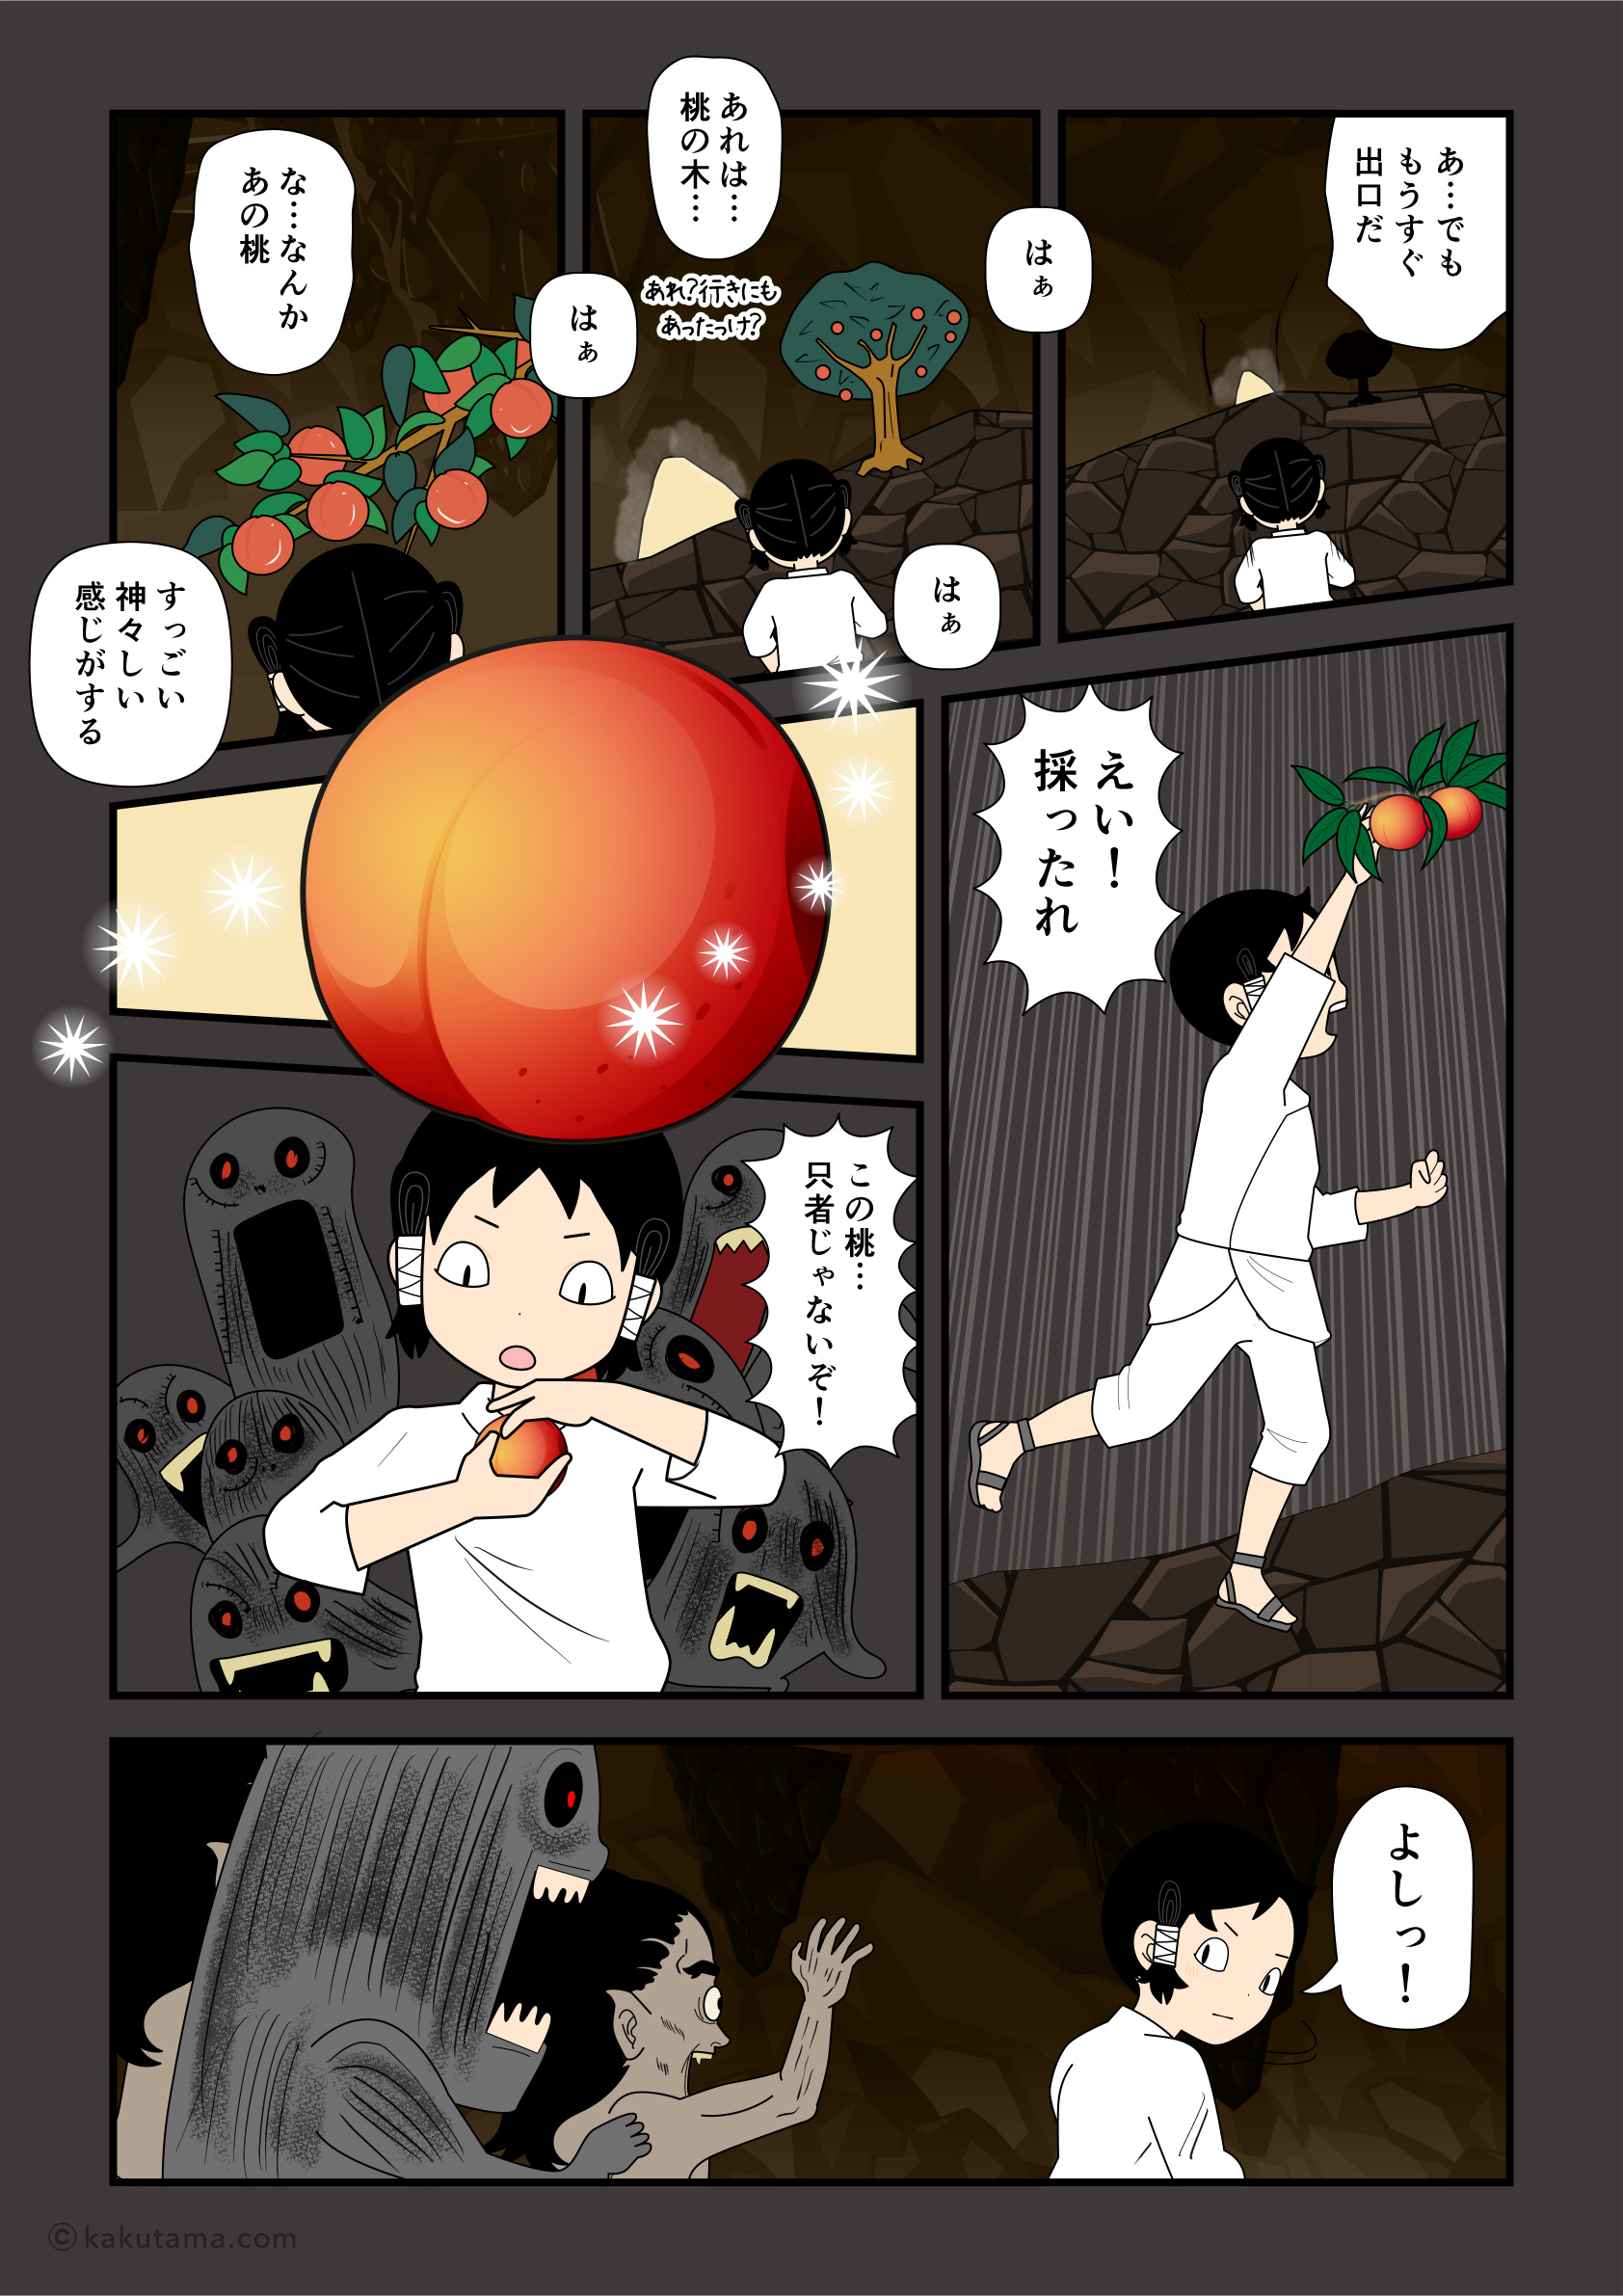 黄泉平坂で桃を発見したイザナギの漫画